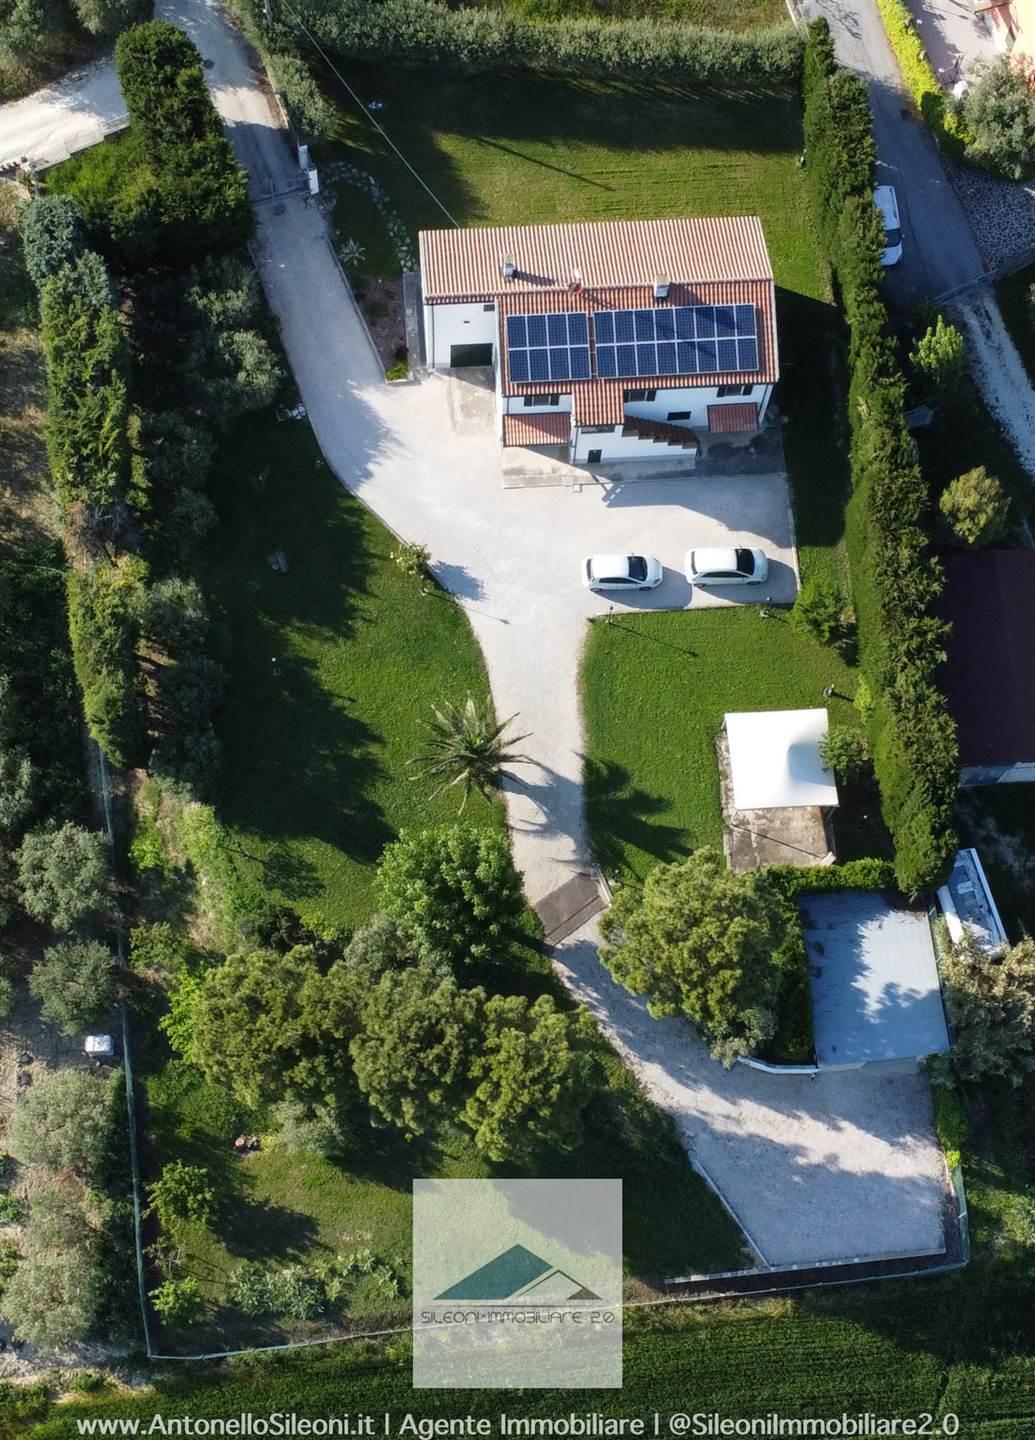 Villa in vendita a Recanati, 5 locali, zona Località: BAGNOLO, prezzo € 395.000 | PortaleAgenzieImmobiliari.it